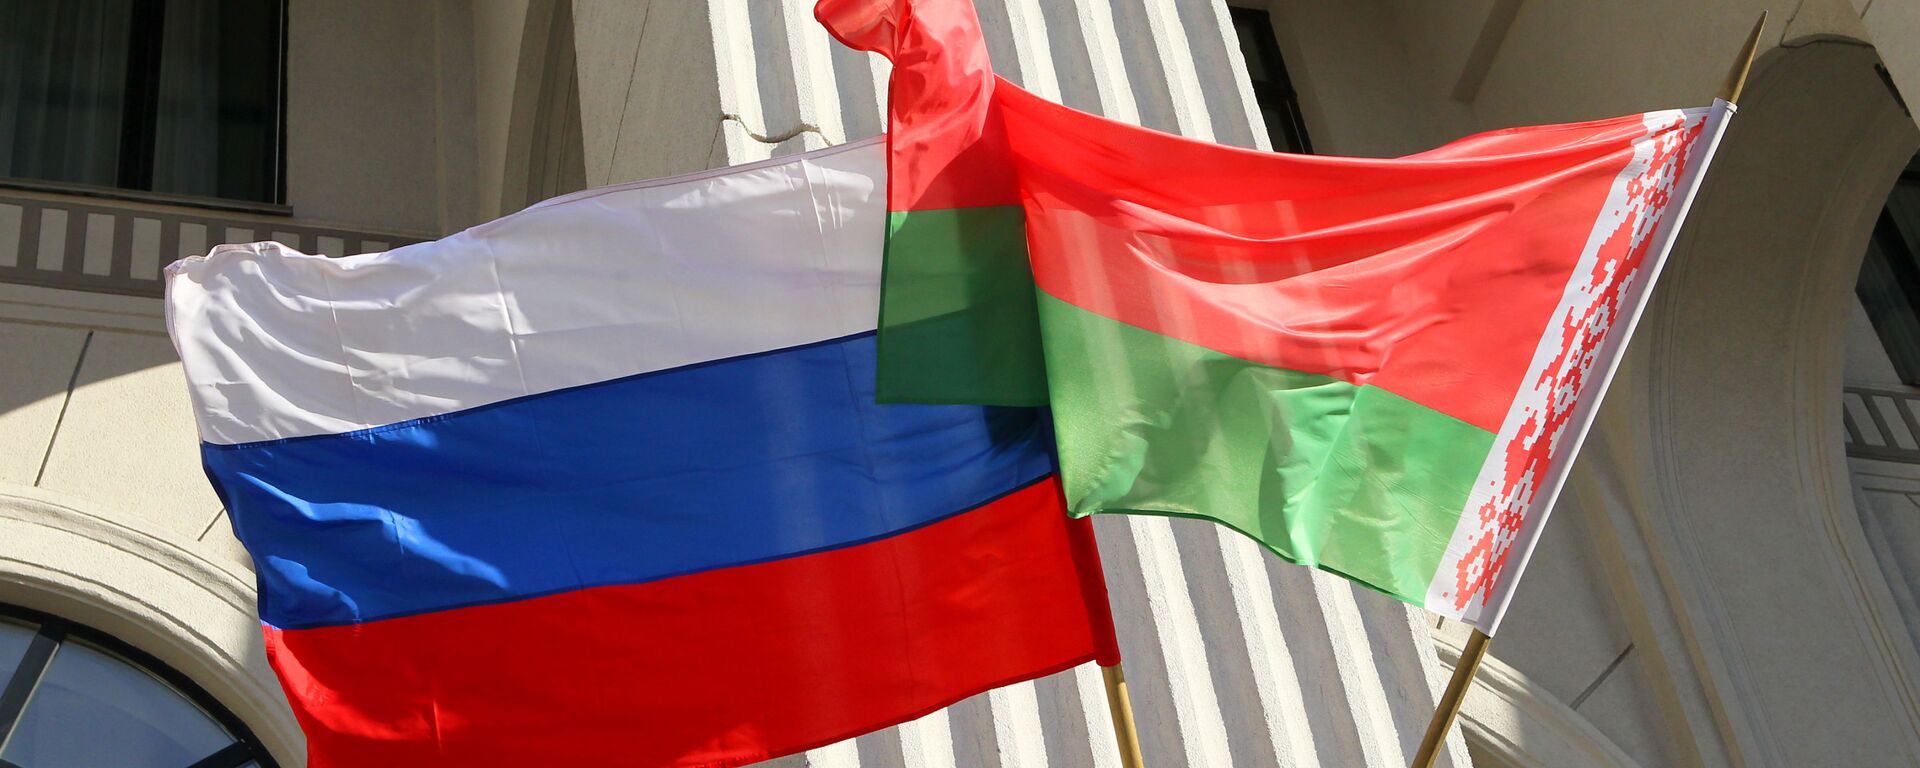 Rusijos ir Baltarusijos vėliavos - Sputnik Lietuva, 1920, 31.05.2021